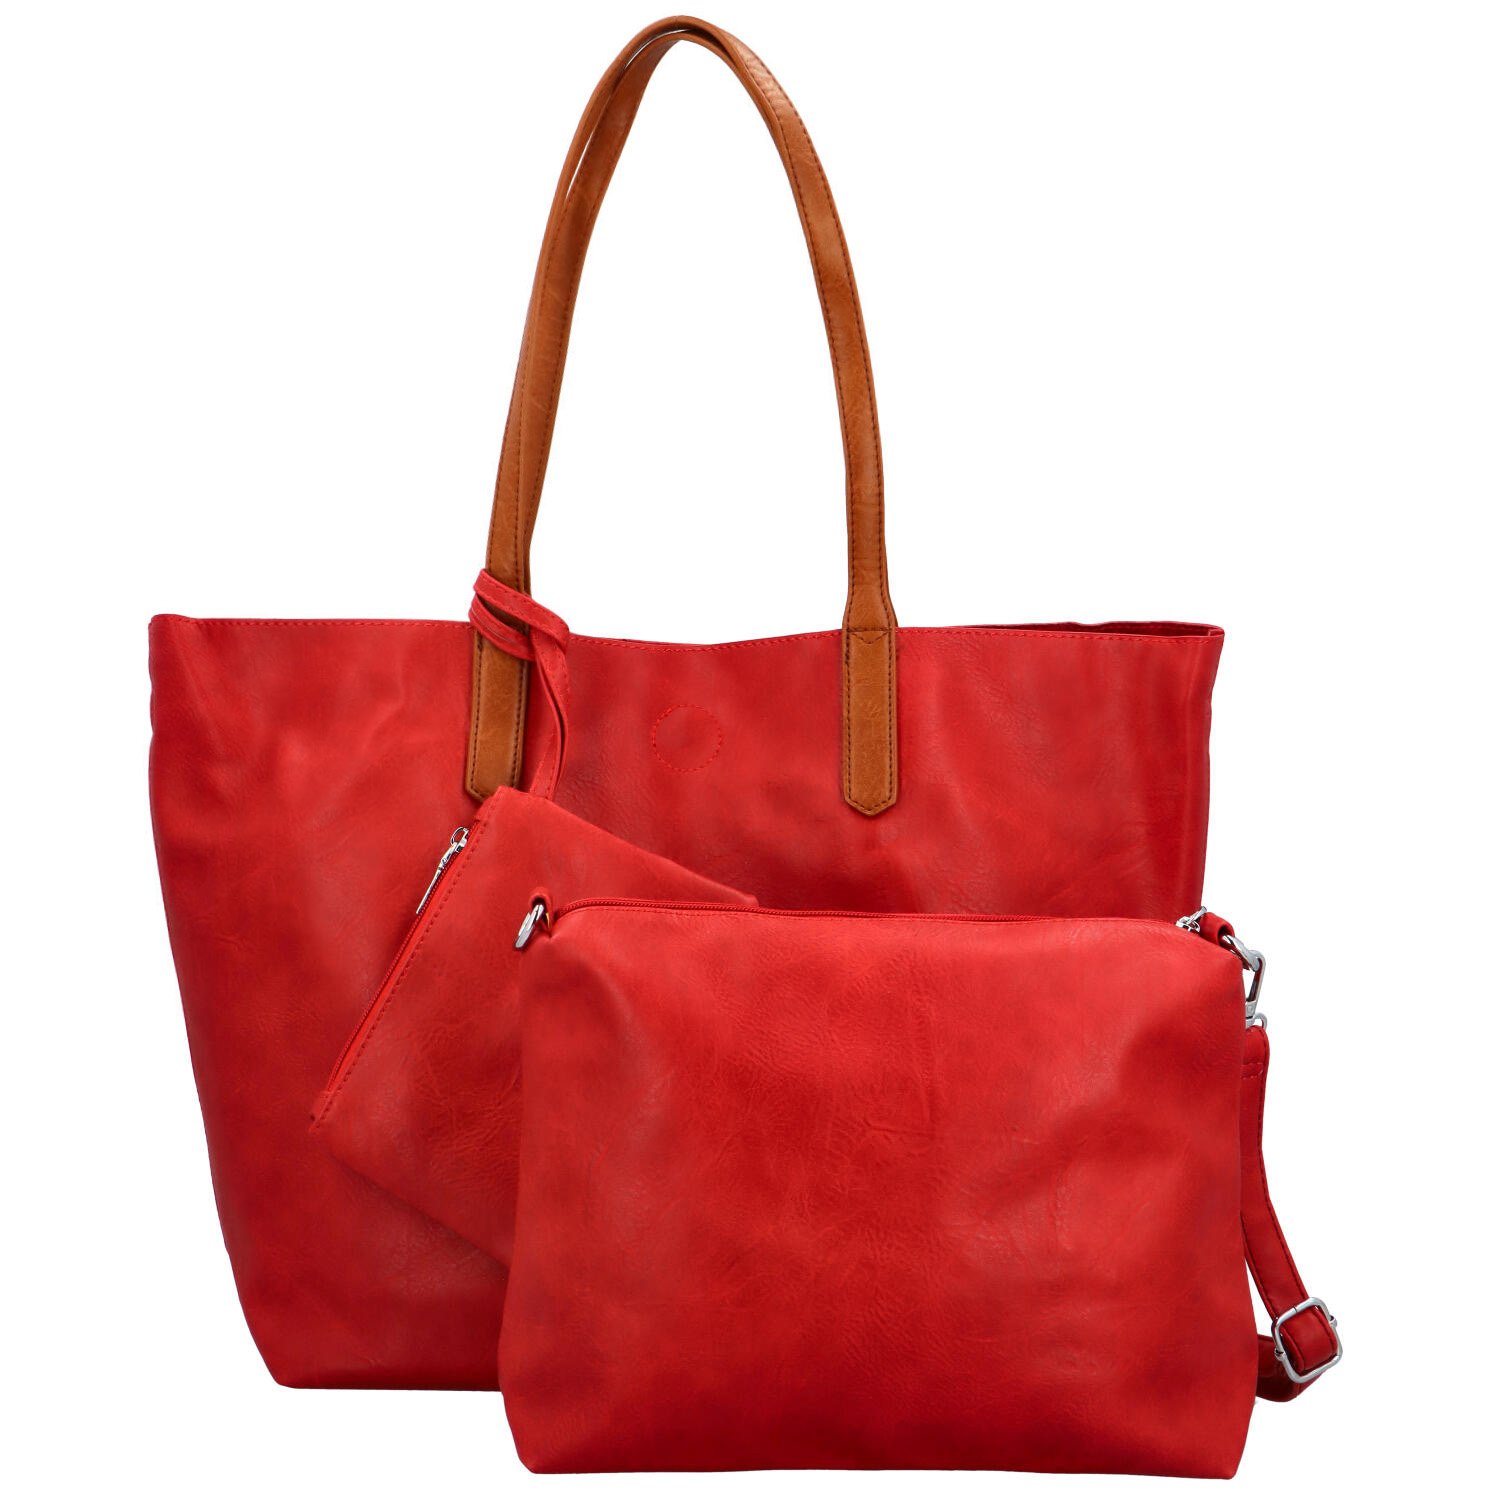 Trendy dámská koženková kabelka 2v1 na rameno Ignáta, červená